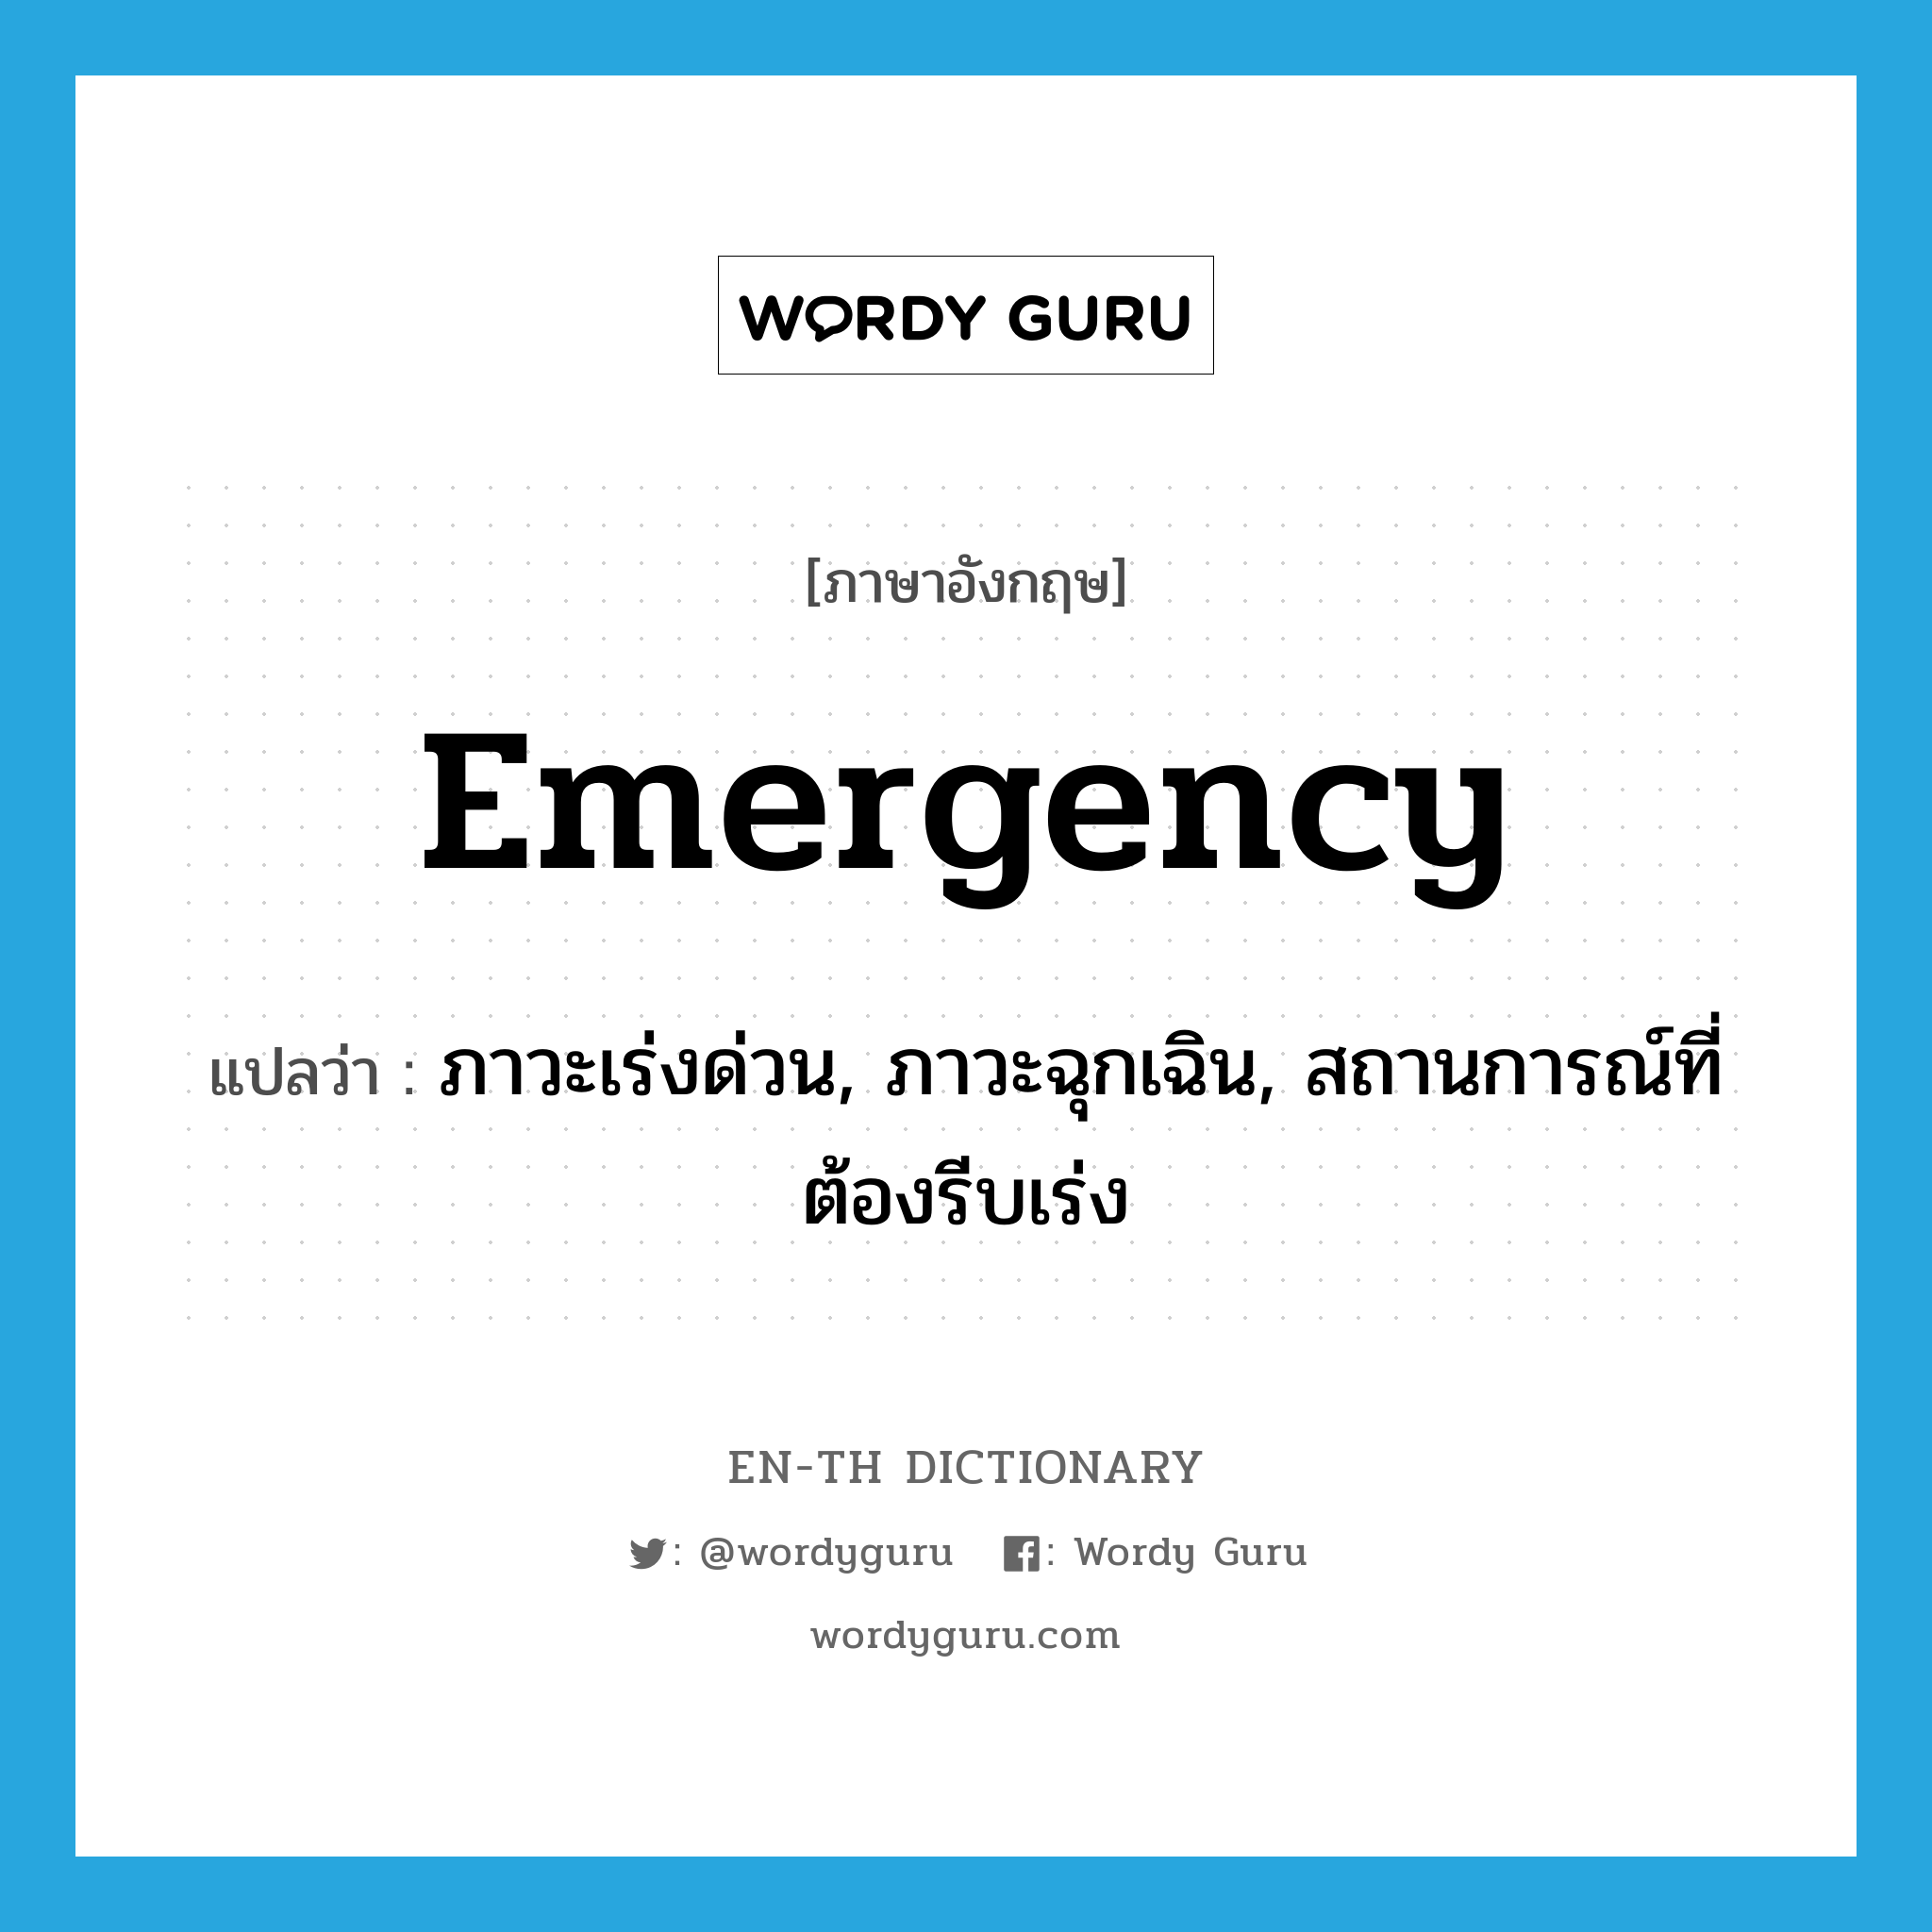 ภาวะเร่งด่วน, ภาวะฉุกเฉิน, สถานการณ์ที่ต้องรีบเร่ง ภาษาอังกฤษ?, คำศัพท์ภาษาอังกฤษ ภาวะเร่งด่วน, ภาวะฉุกเฉิน, สถานการณ์ที่ต้องรีบเร่ง แปลว่า emergency ประเภท N หมวด N